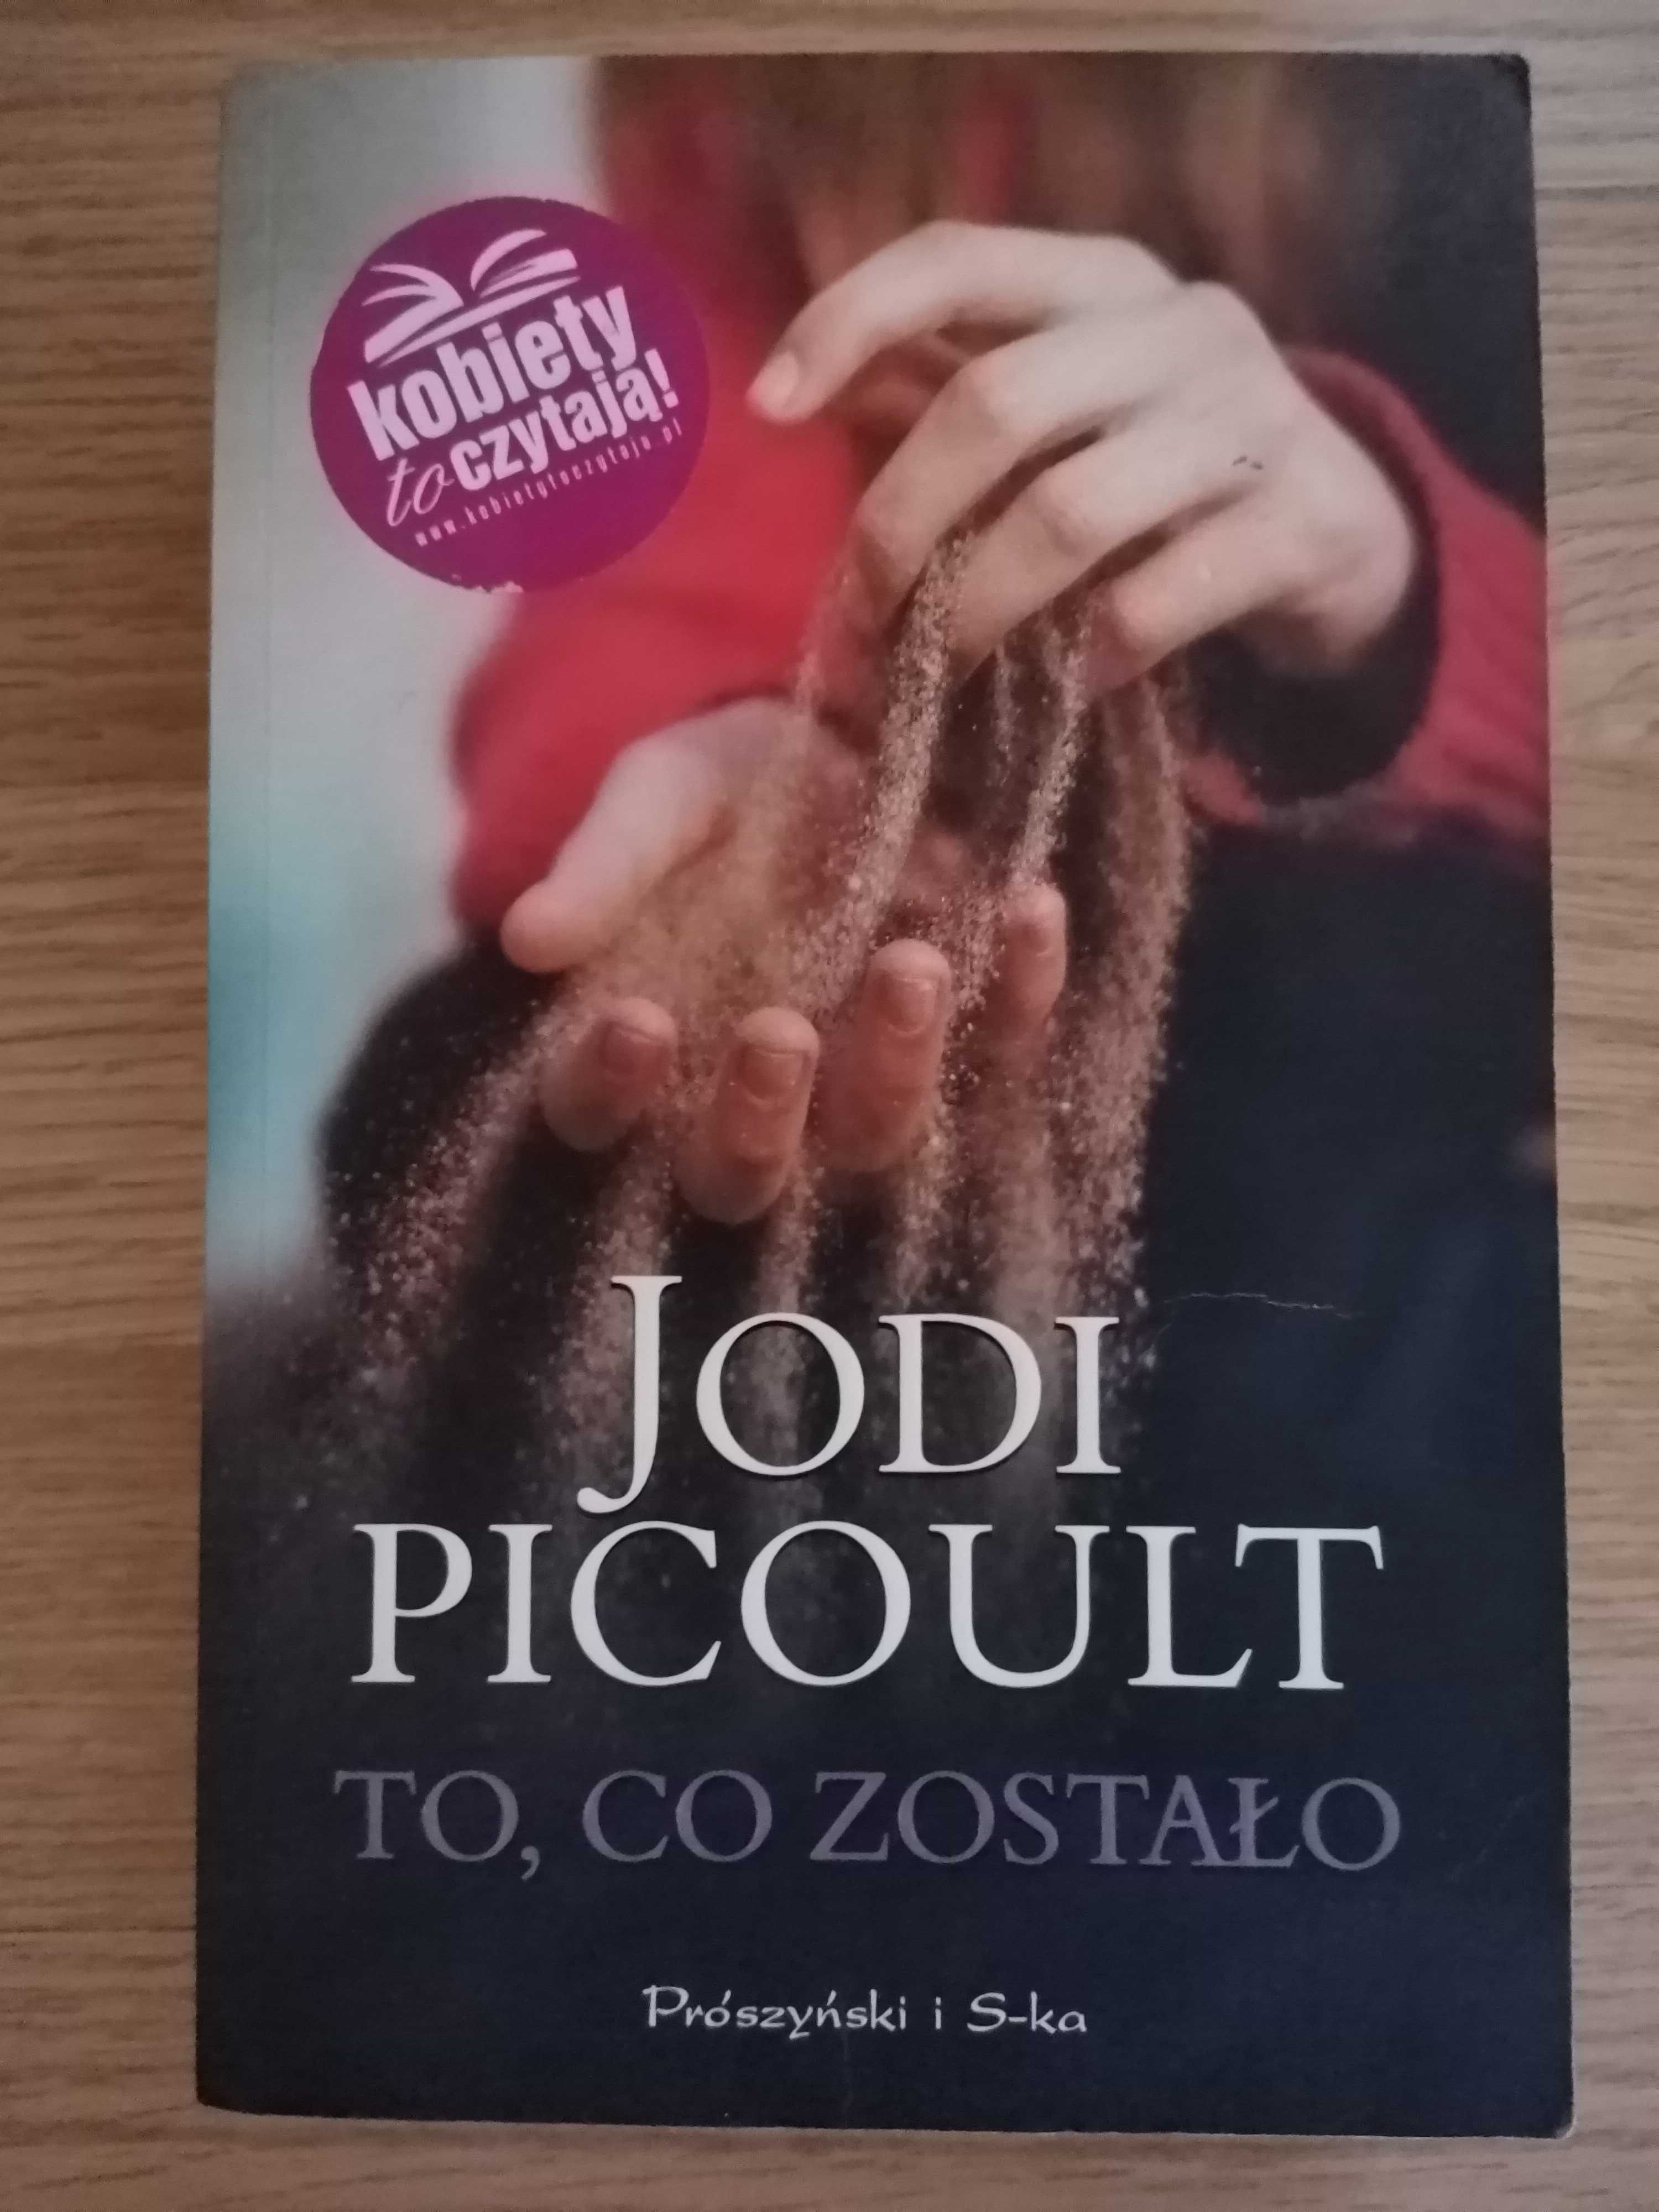 "To, co zostało" Jodi Picoult